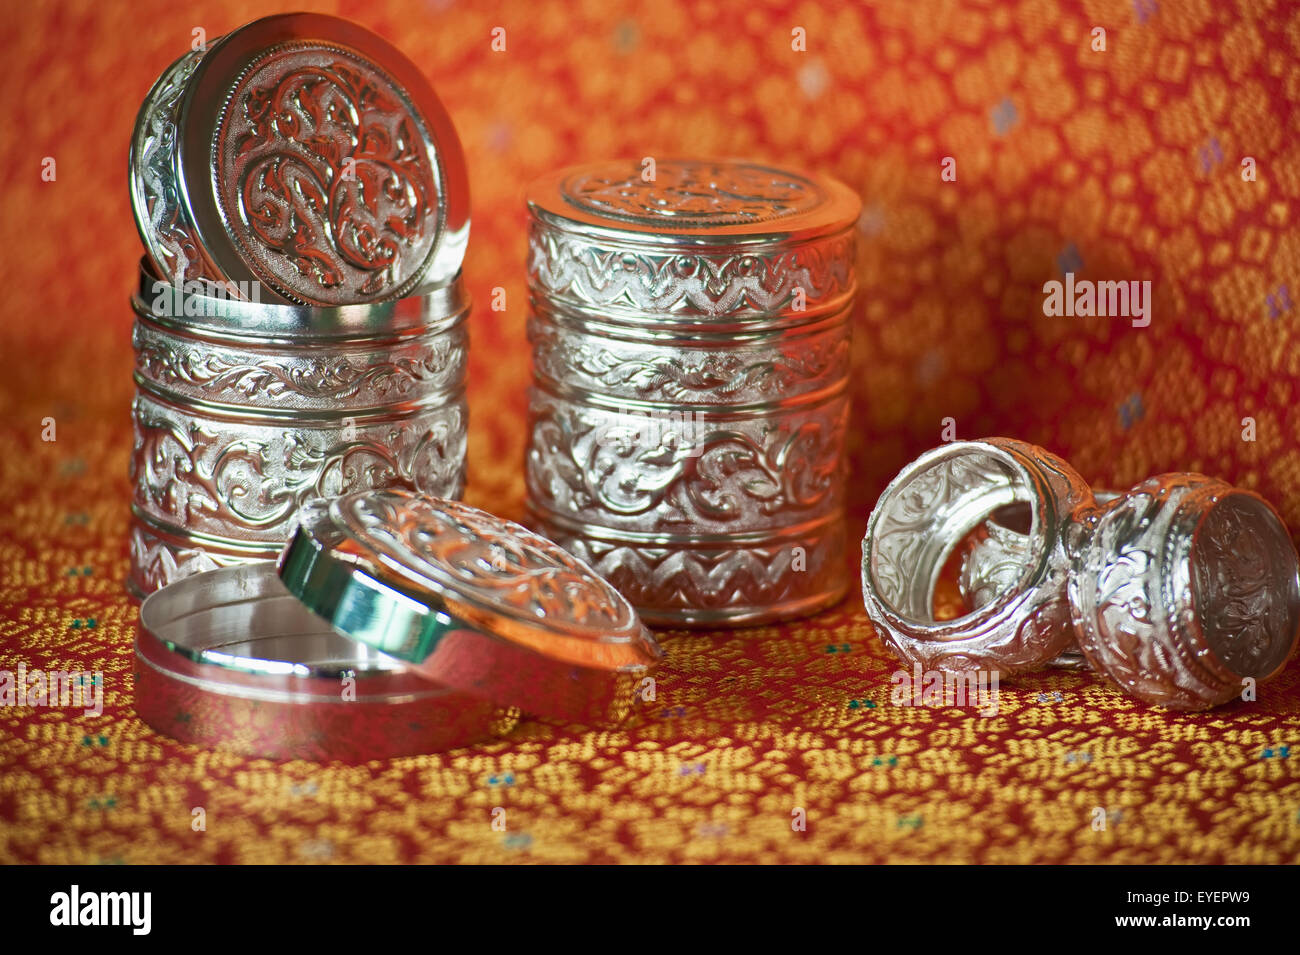 Silverwear souvenirs from Brunei; Bandar Seri Begawan, Brunei Stock Photo